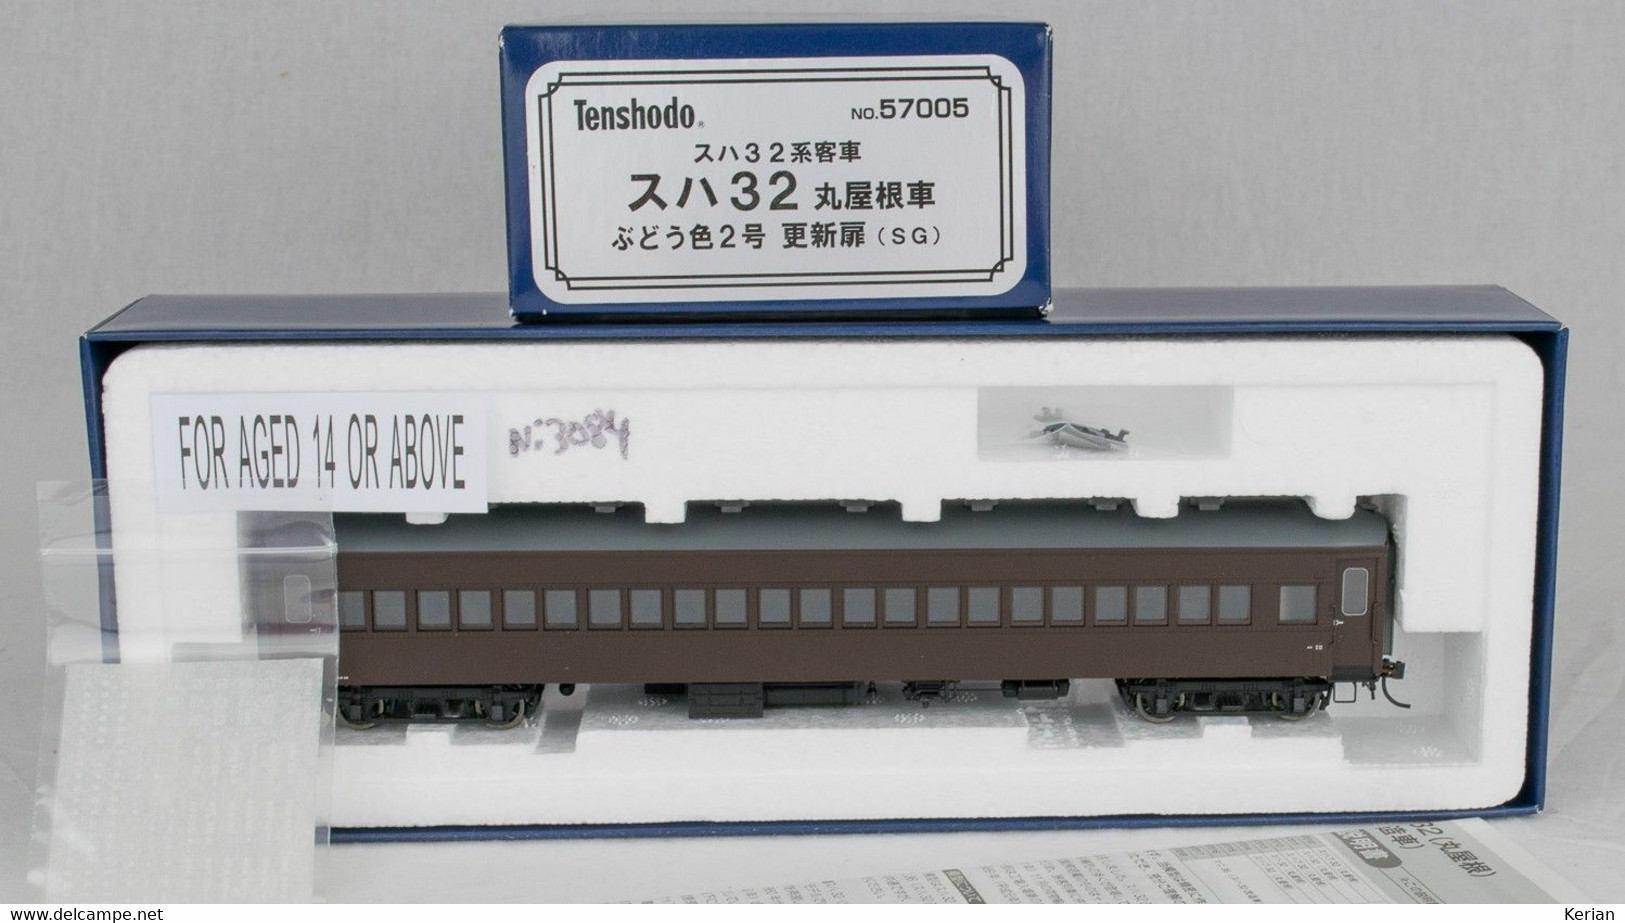 H.O.) Tenshodo Serie Plastic Model Collection - Voiture Passagers De La J.N.R Série SUHA 32, Type SUHA 32 Arch - 57005 - Passenger Trains